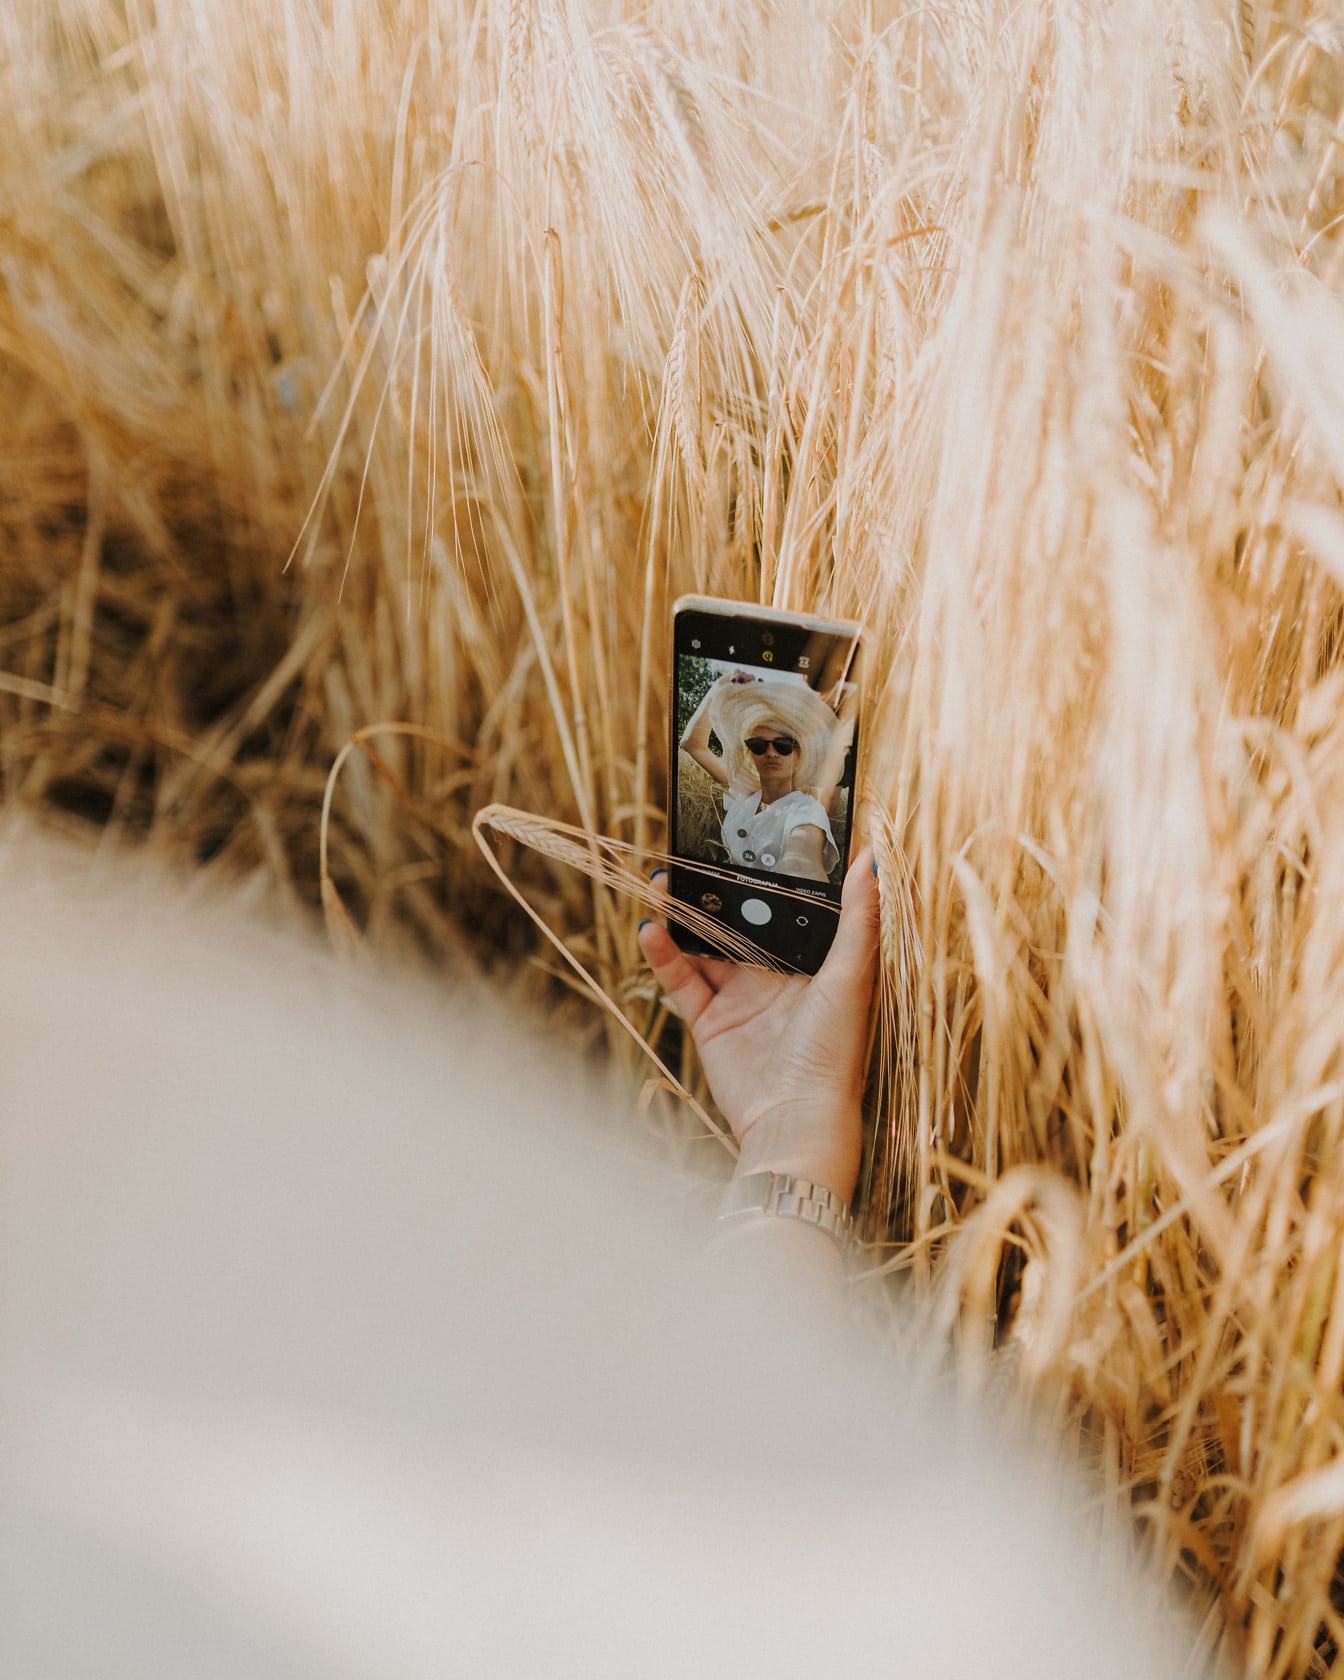 Blondă cu pălărie de paie făcând selfie cu telefonul mobil în grâu